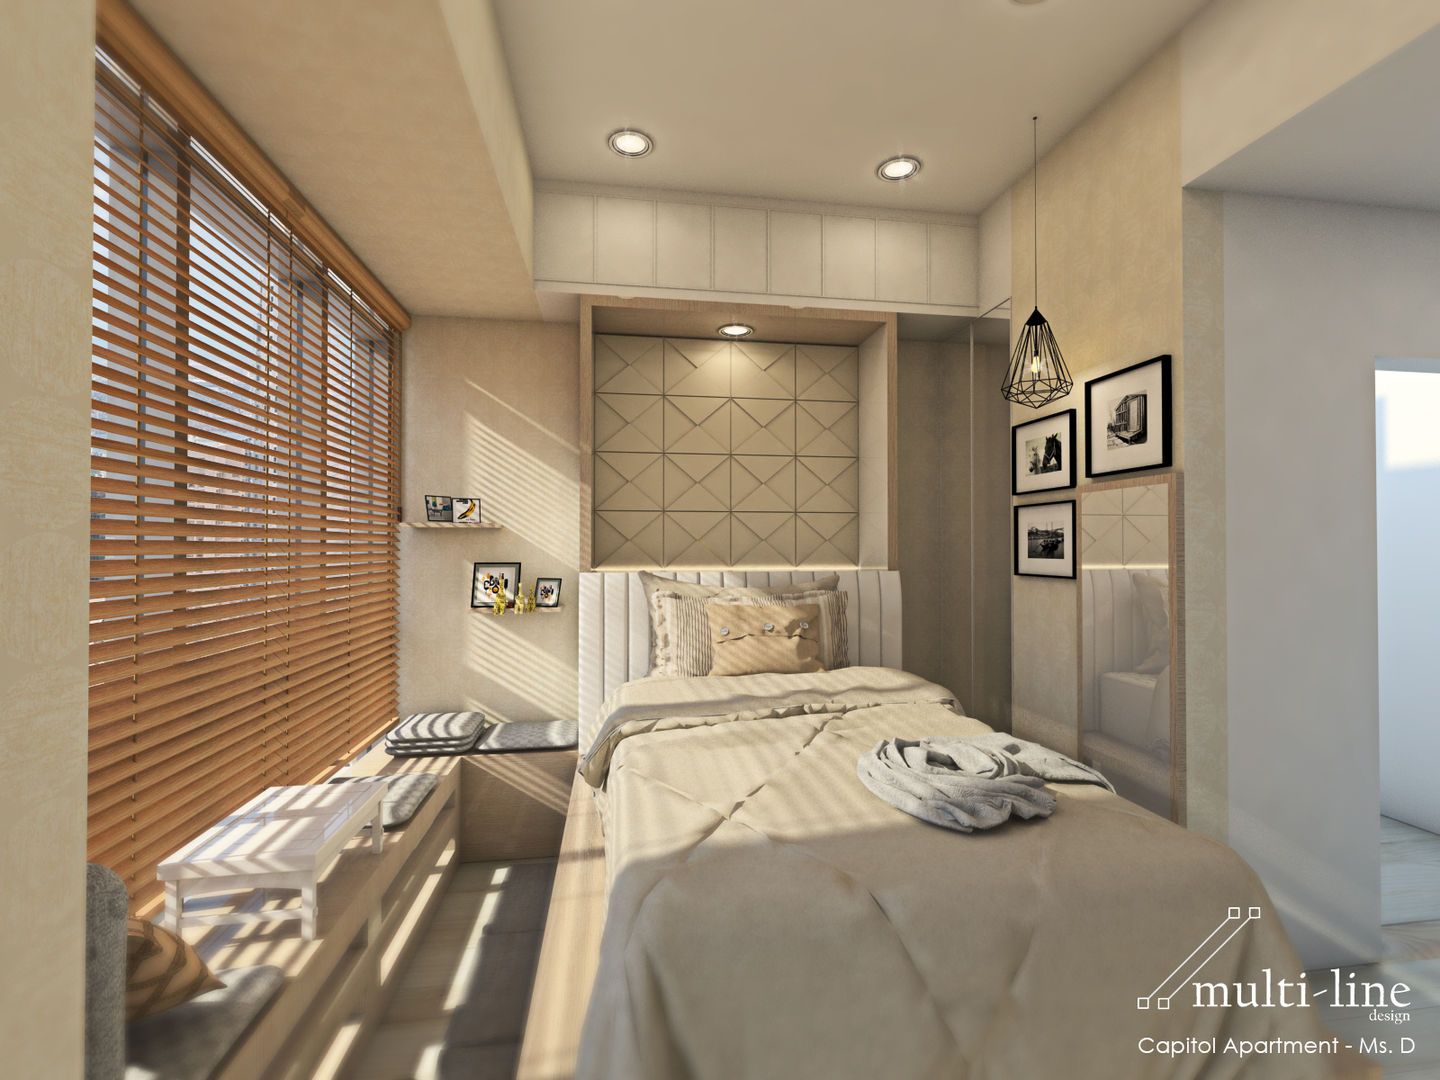 Studio Room - Capitol Apartment, Multiline Design Multiline Design Bedroom